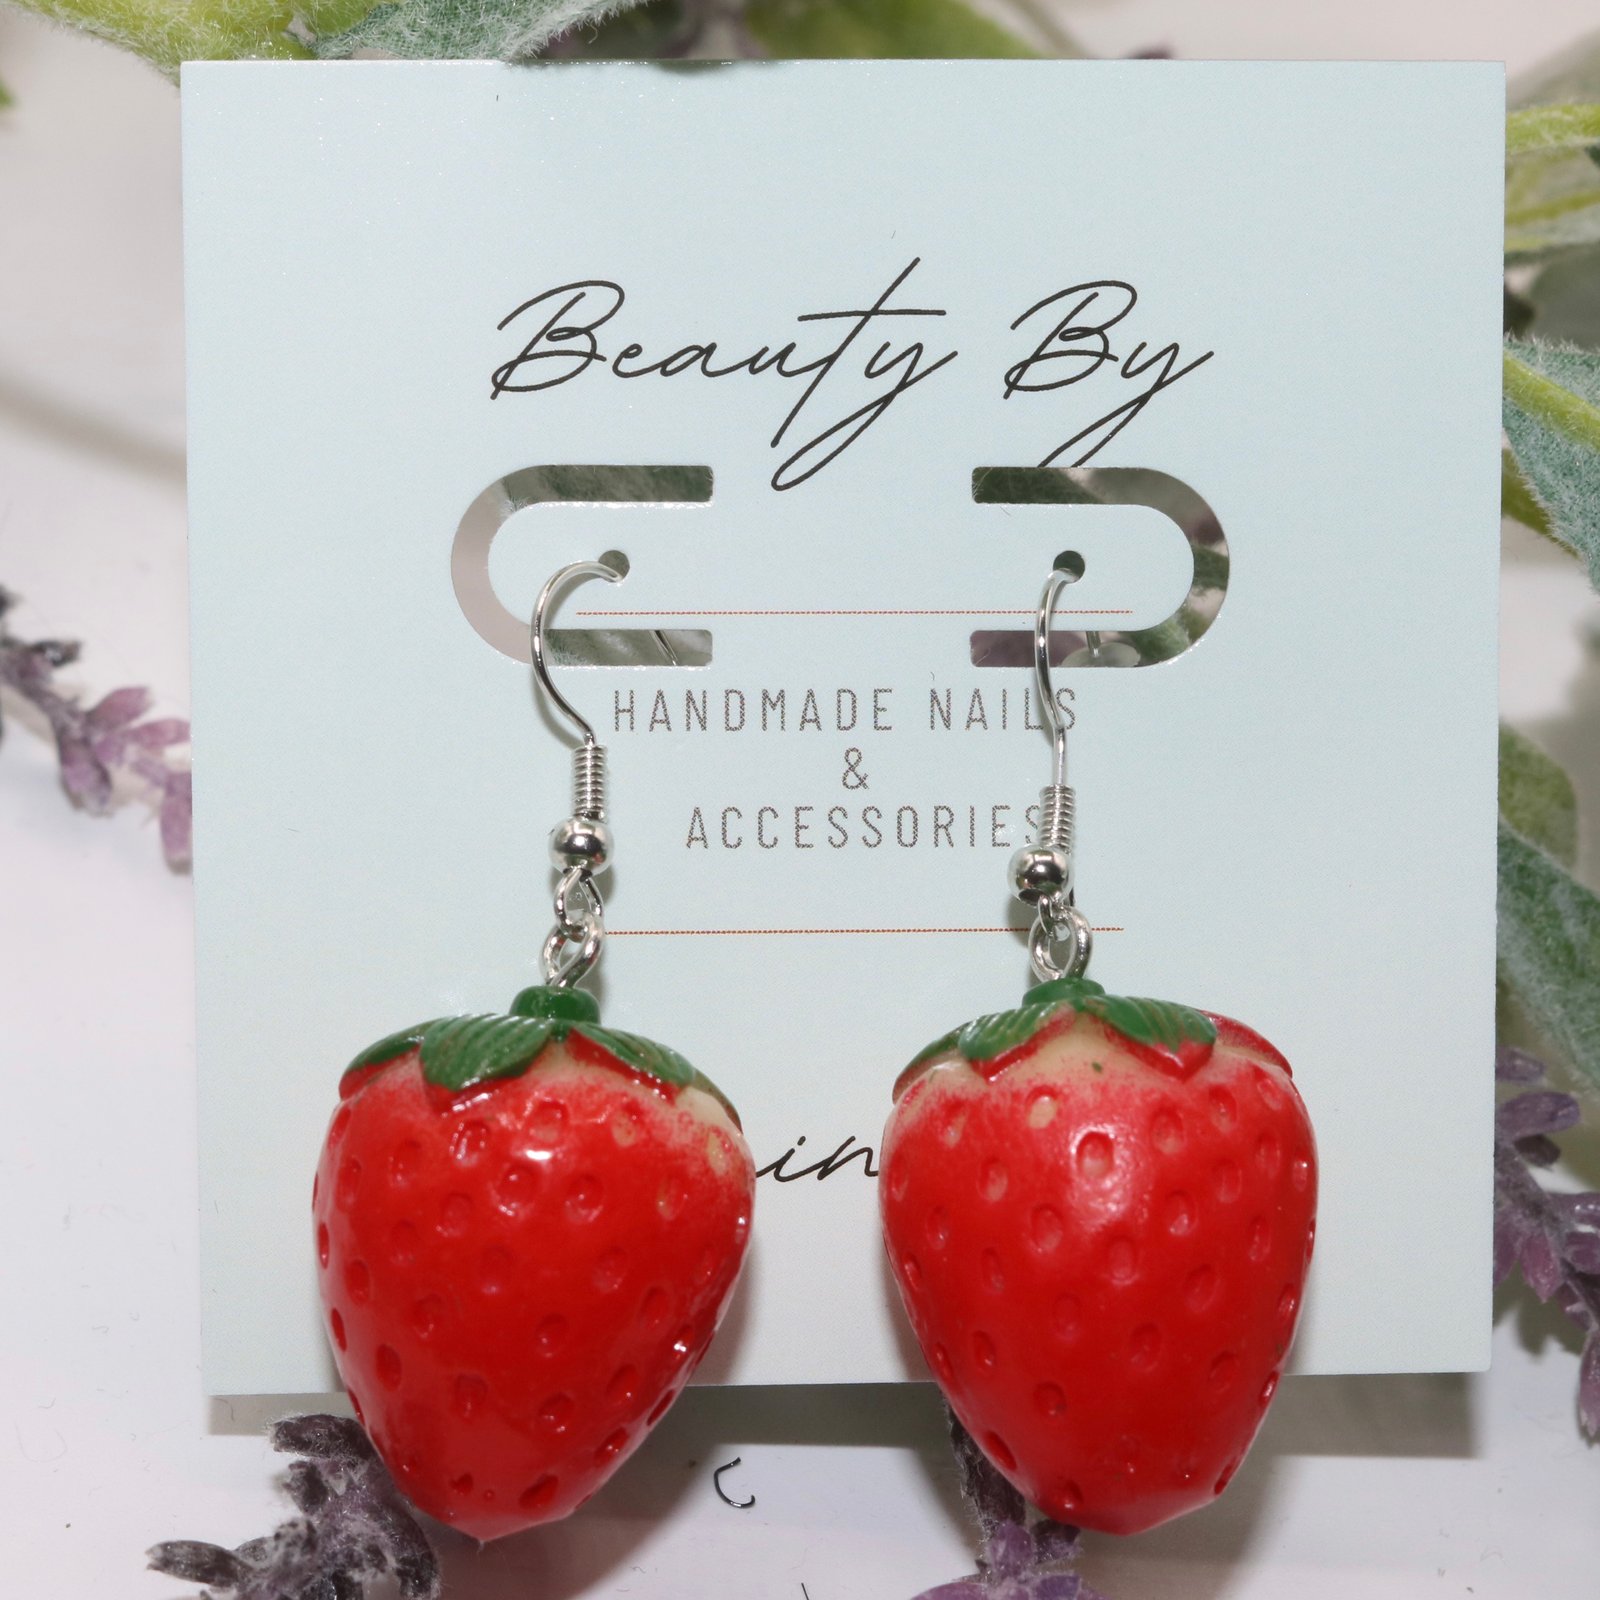 Cute Strawberry Drop Earrings